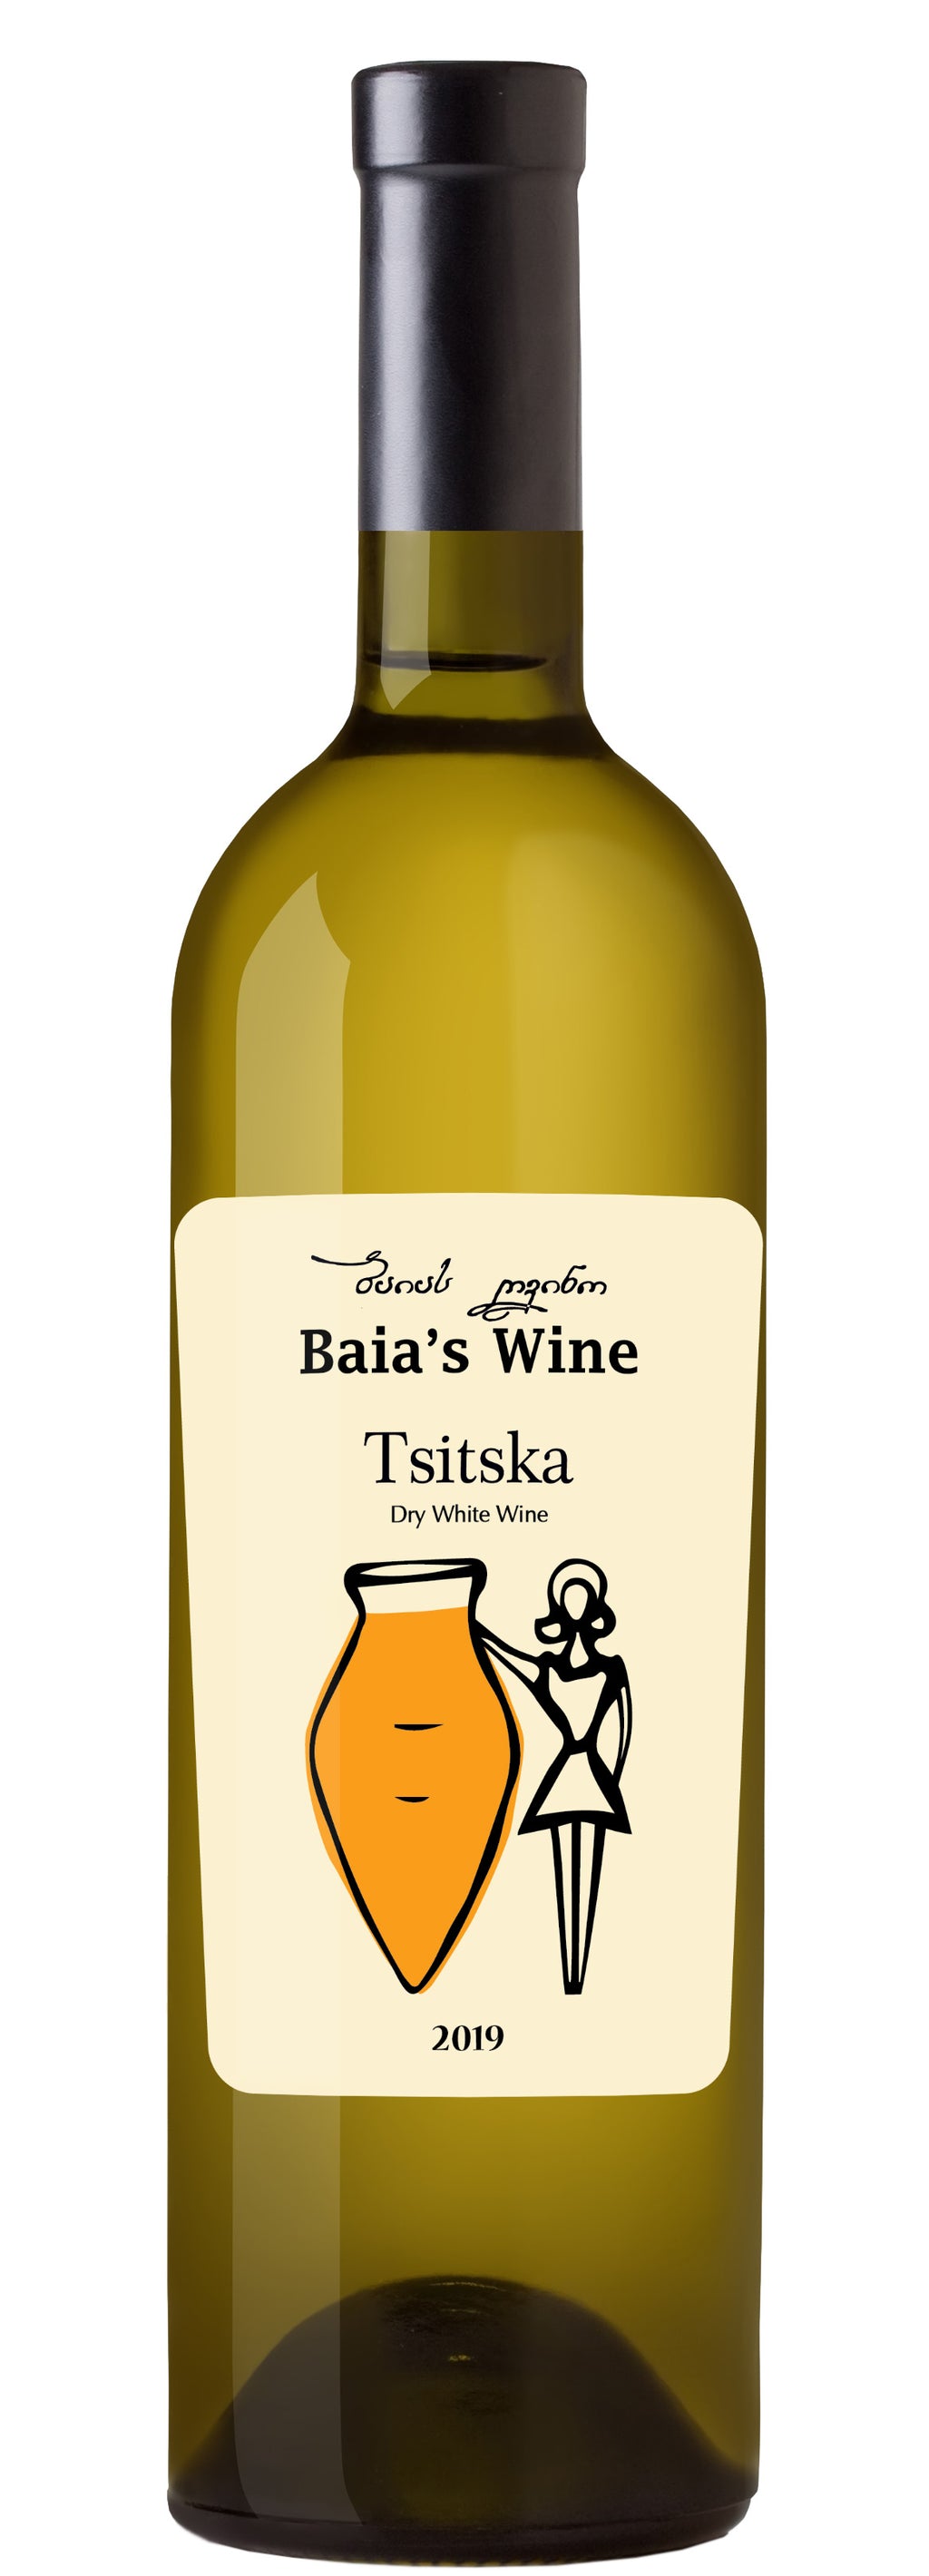 Baia's Wine Tsitska, dry white wine, 2019